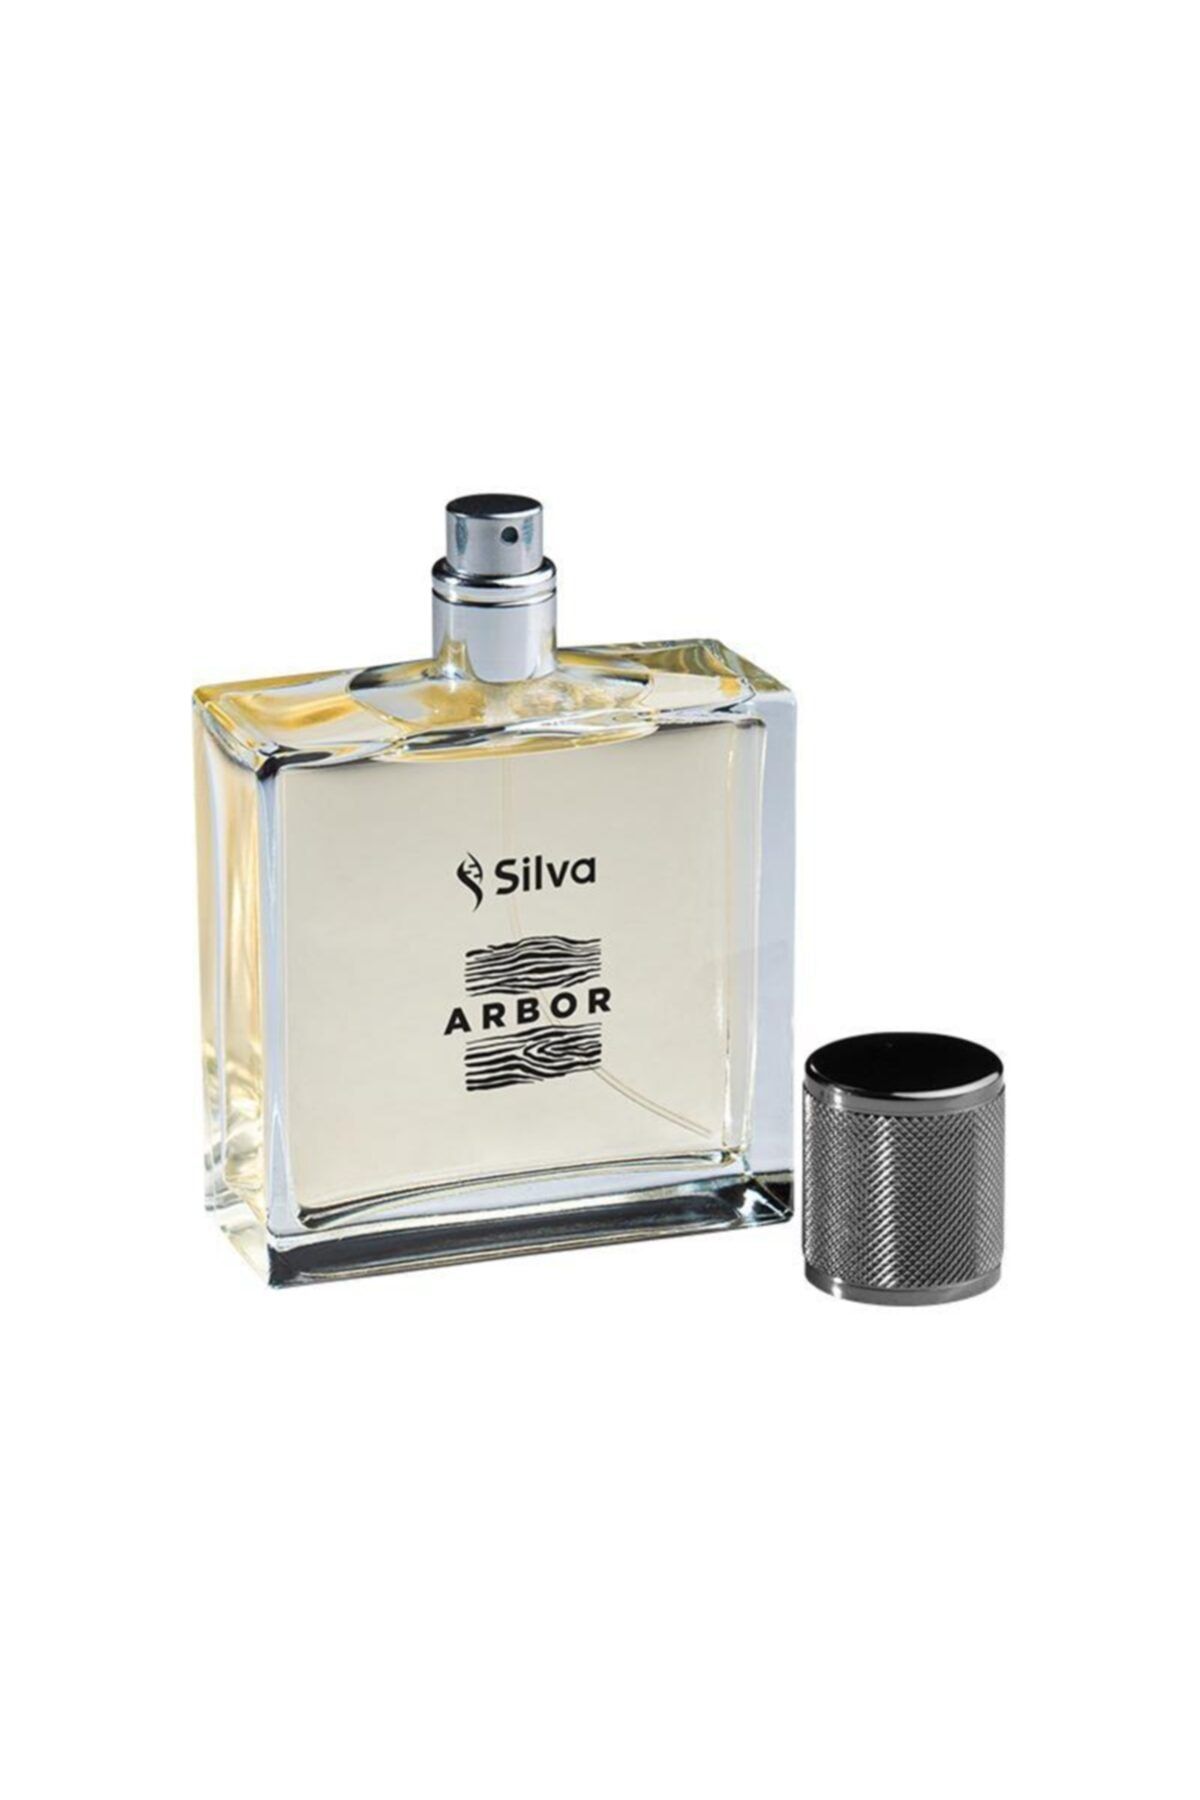 Silva Arbor Erkek Parfüm 100 Ml Edp